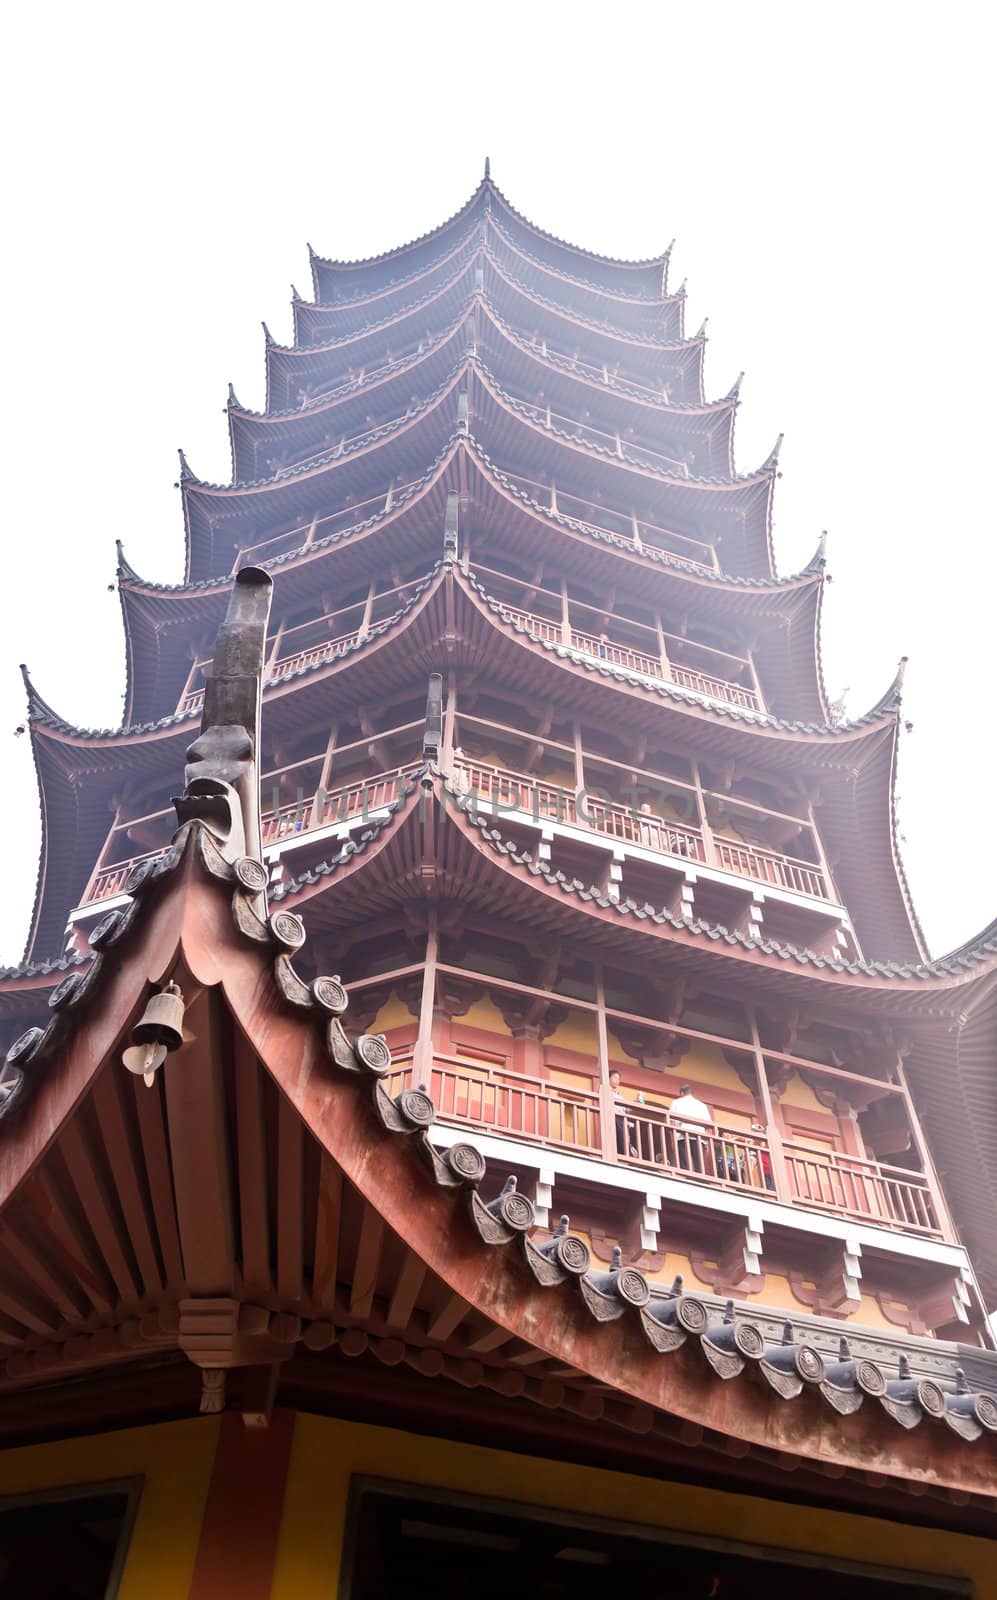 The famous Basita pagoda in Suzhou China 